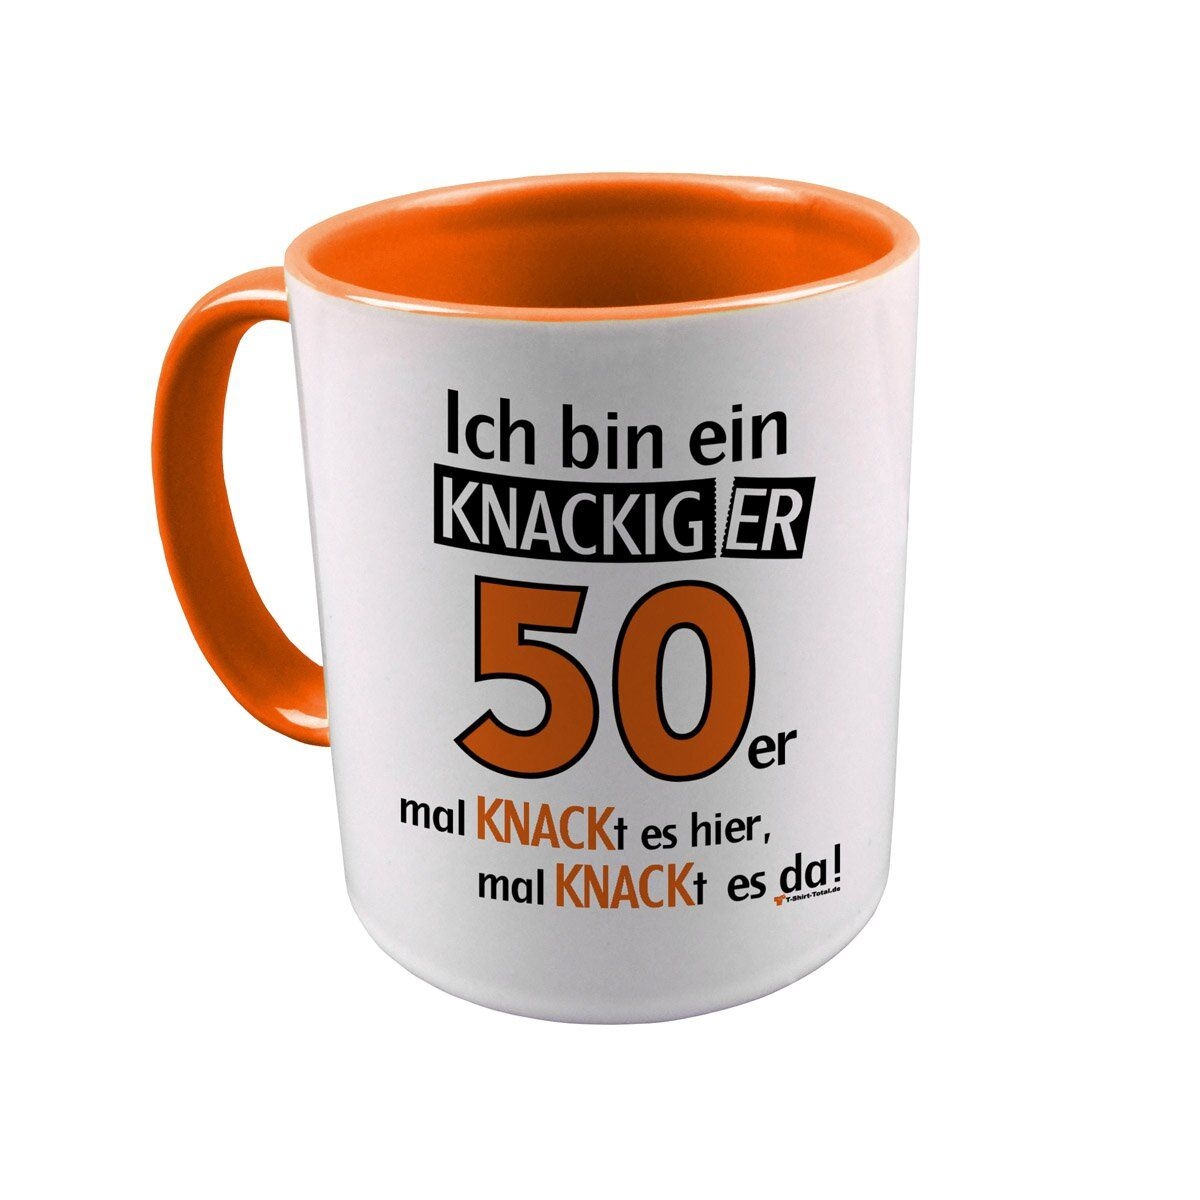 Knackiger 50er Tasse orange / weiß